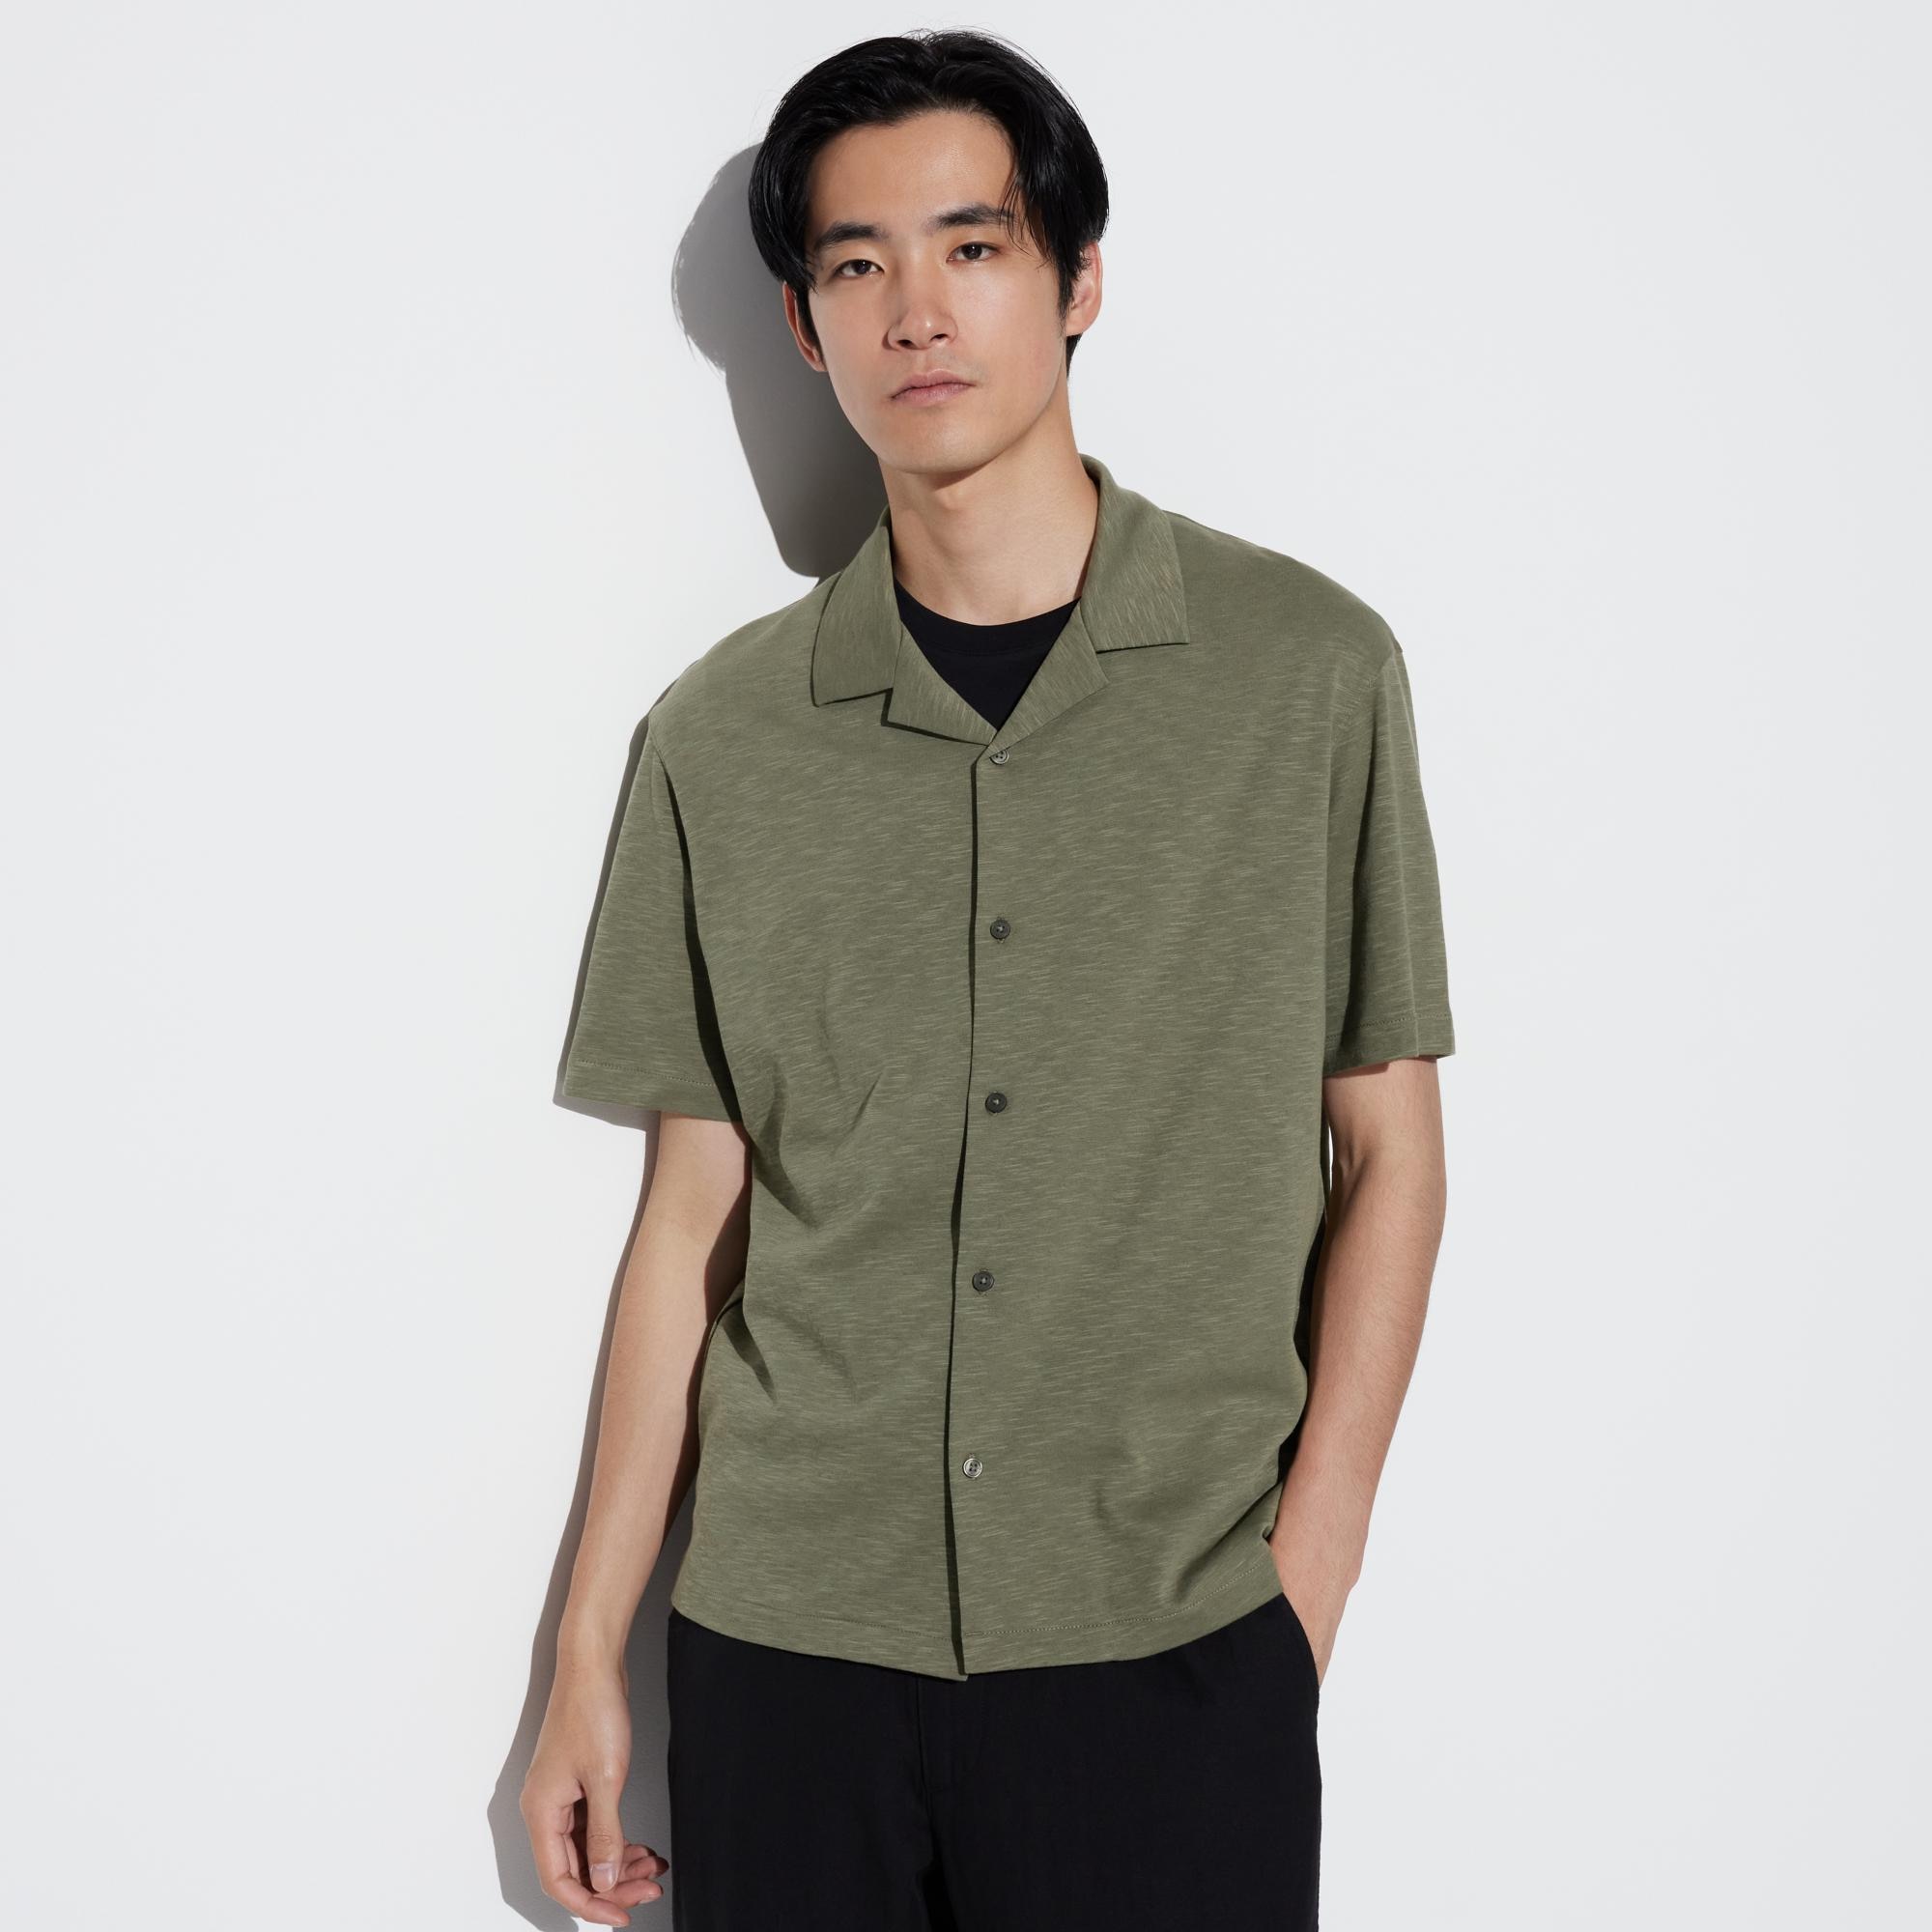 ポロシャツ ボーダー 緑の関連商品 | ユニクロ